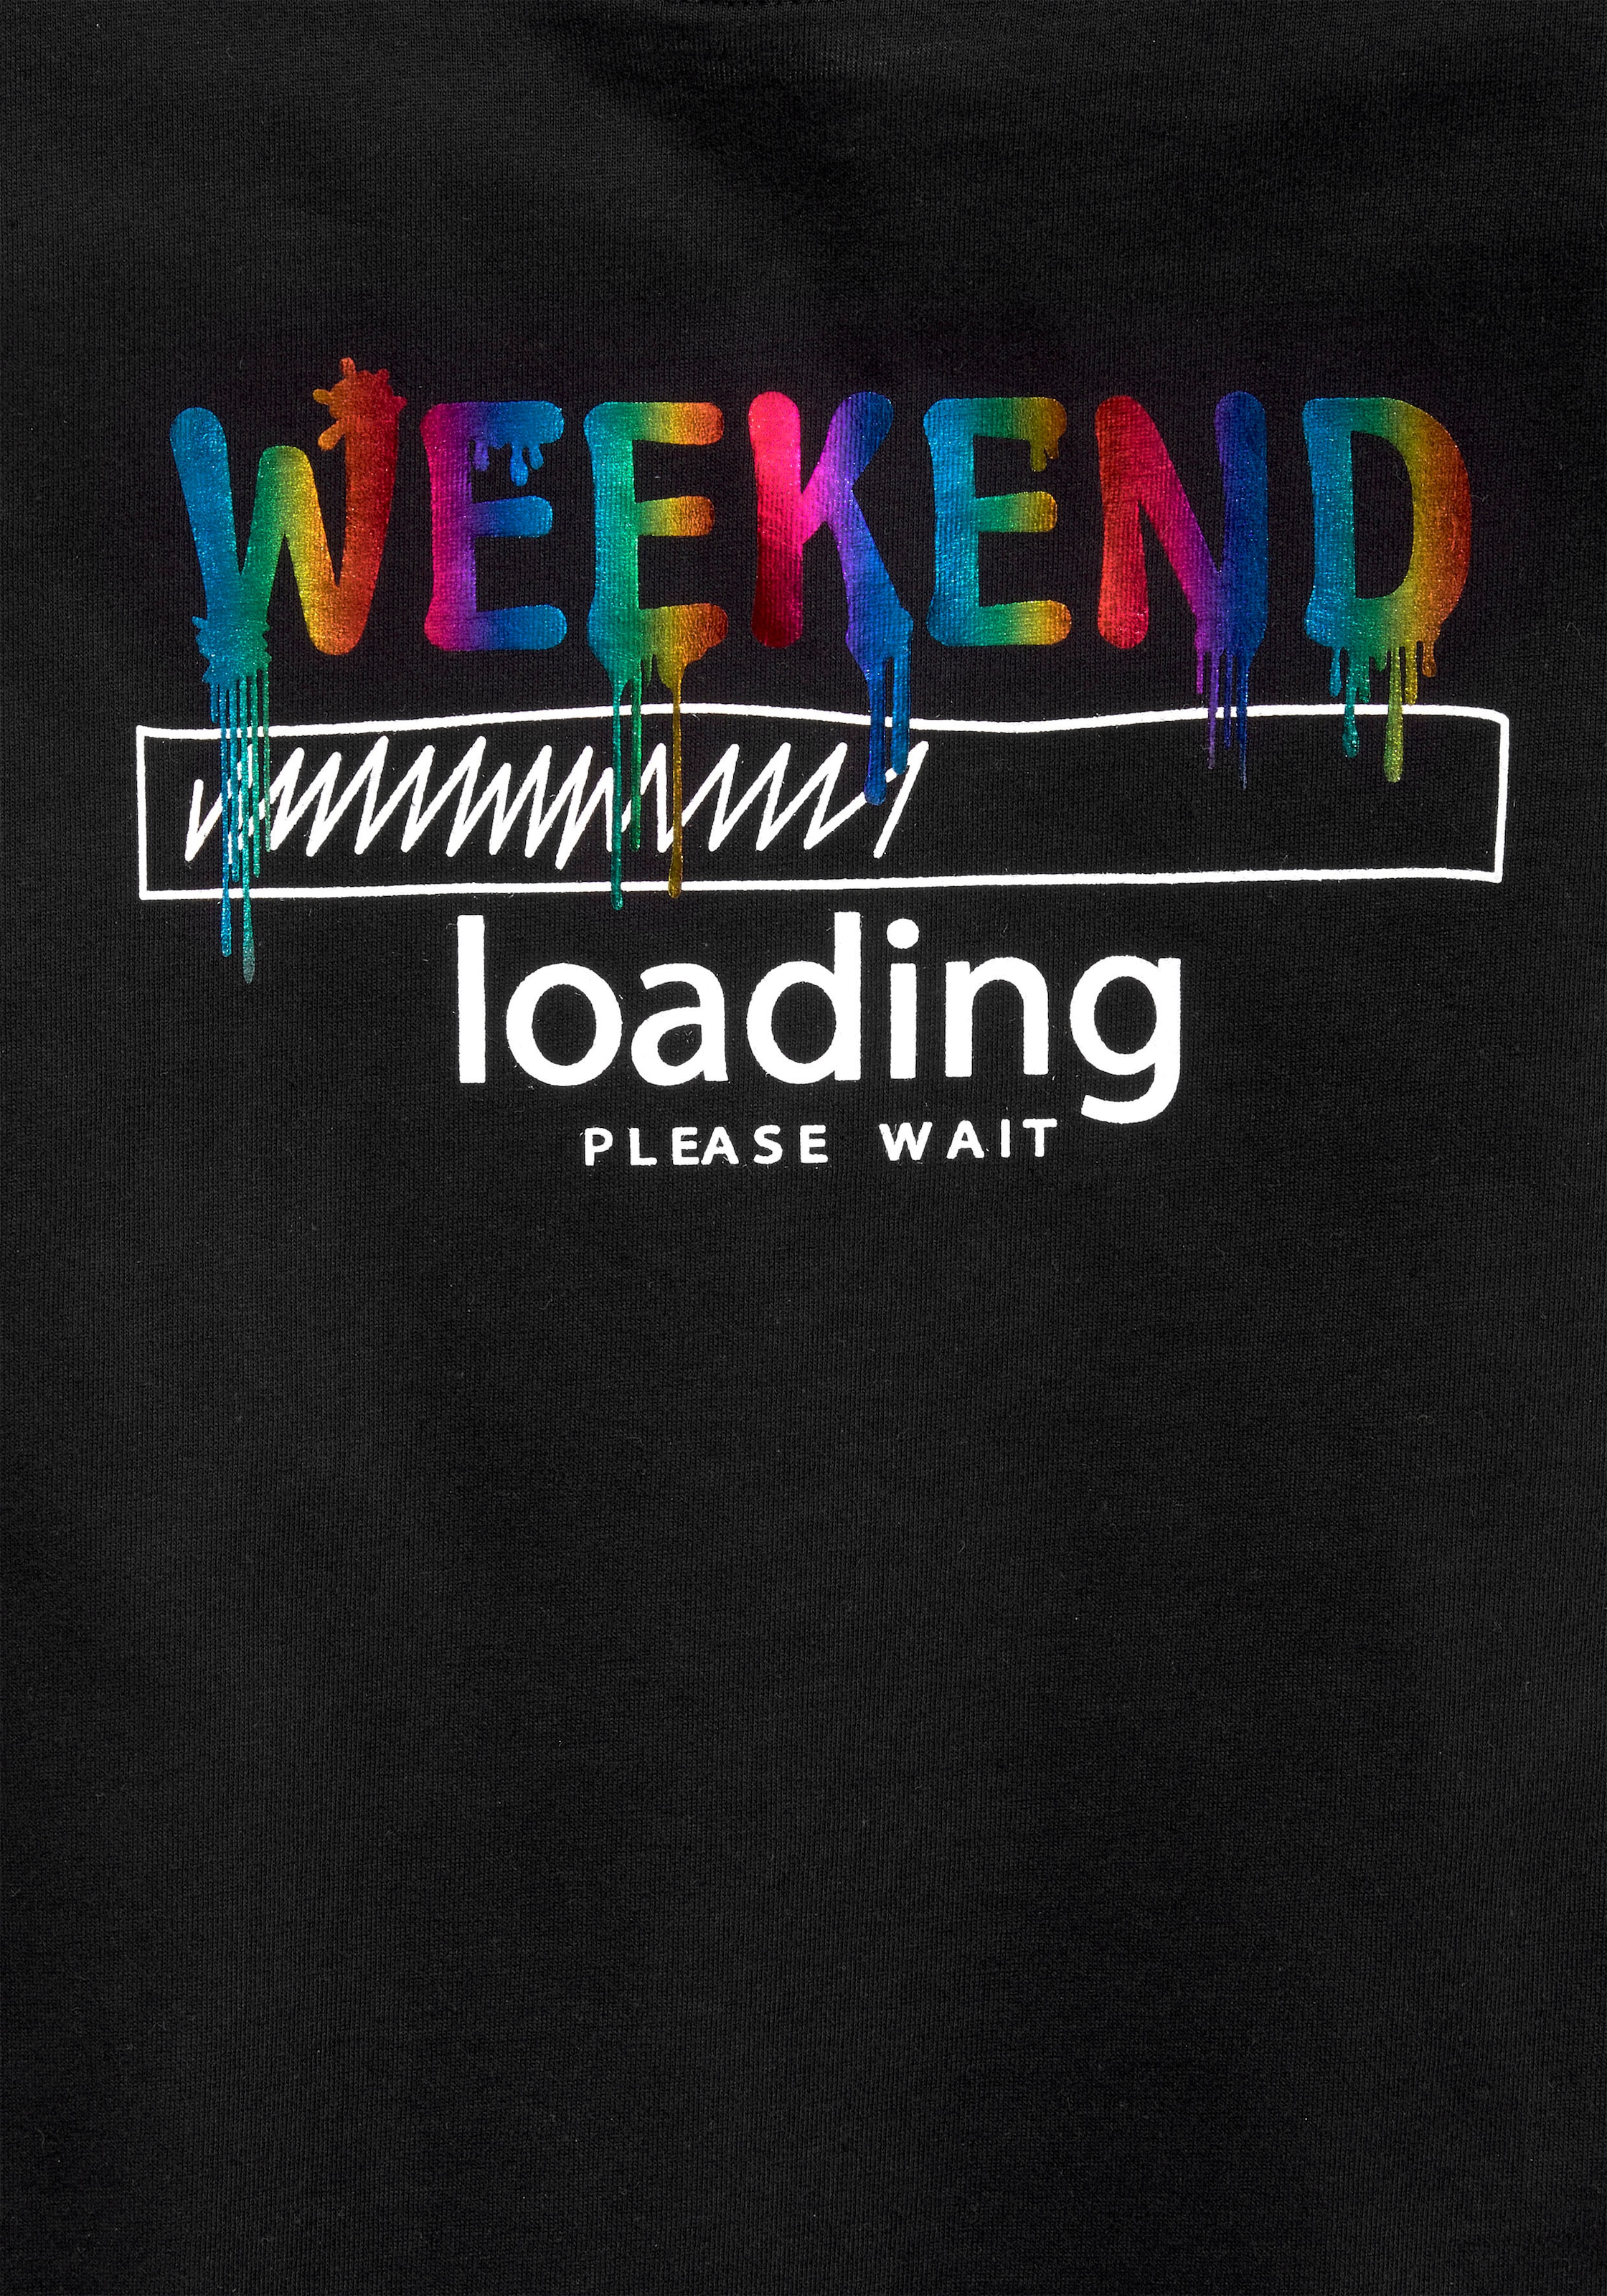 ✵ KIDSWORLD T-Shirt weiter wait«, loading...please | unterschiedlich Jelmoli-Versand online kaufen legerer in Form, Regenbogen-Druckfarben »WEEKEND sind